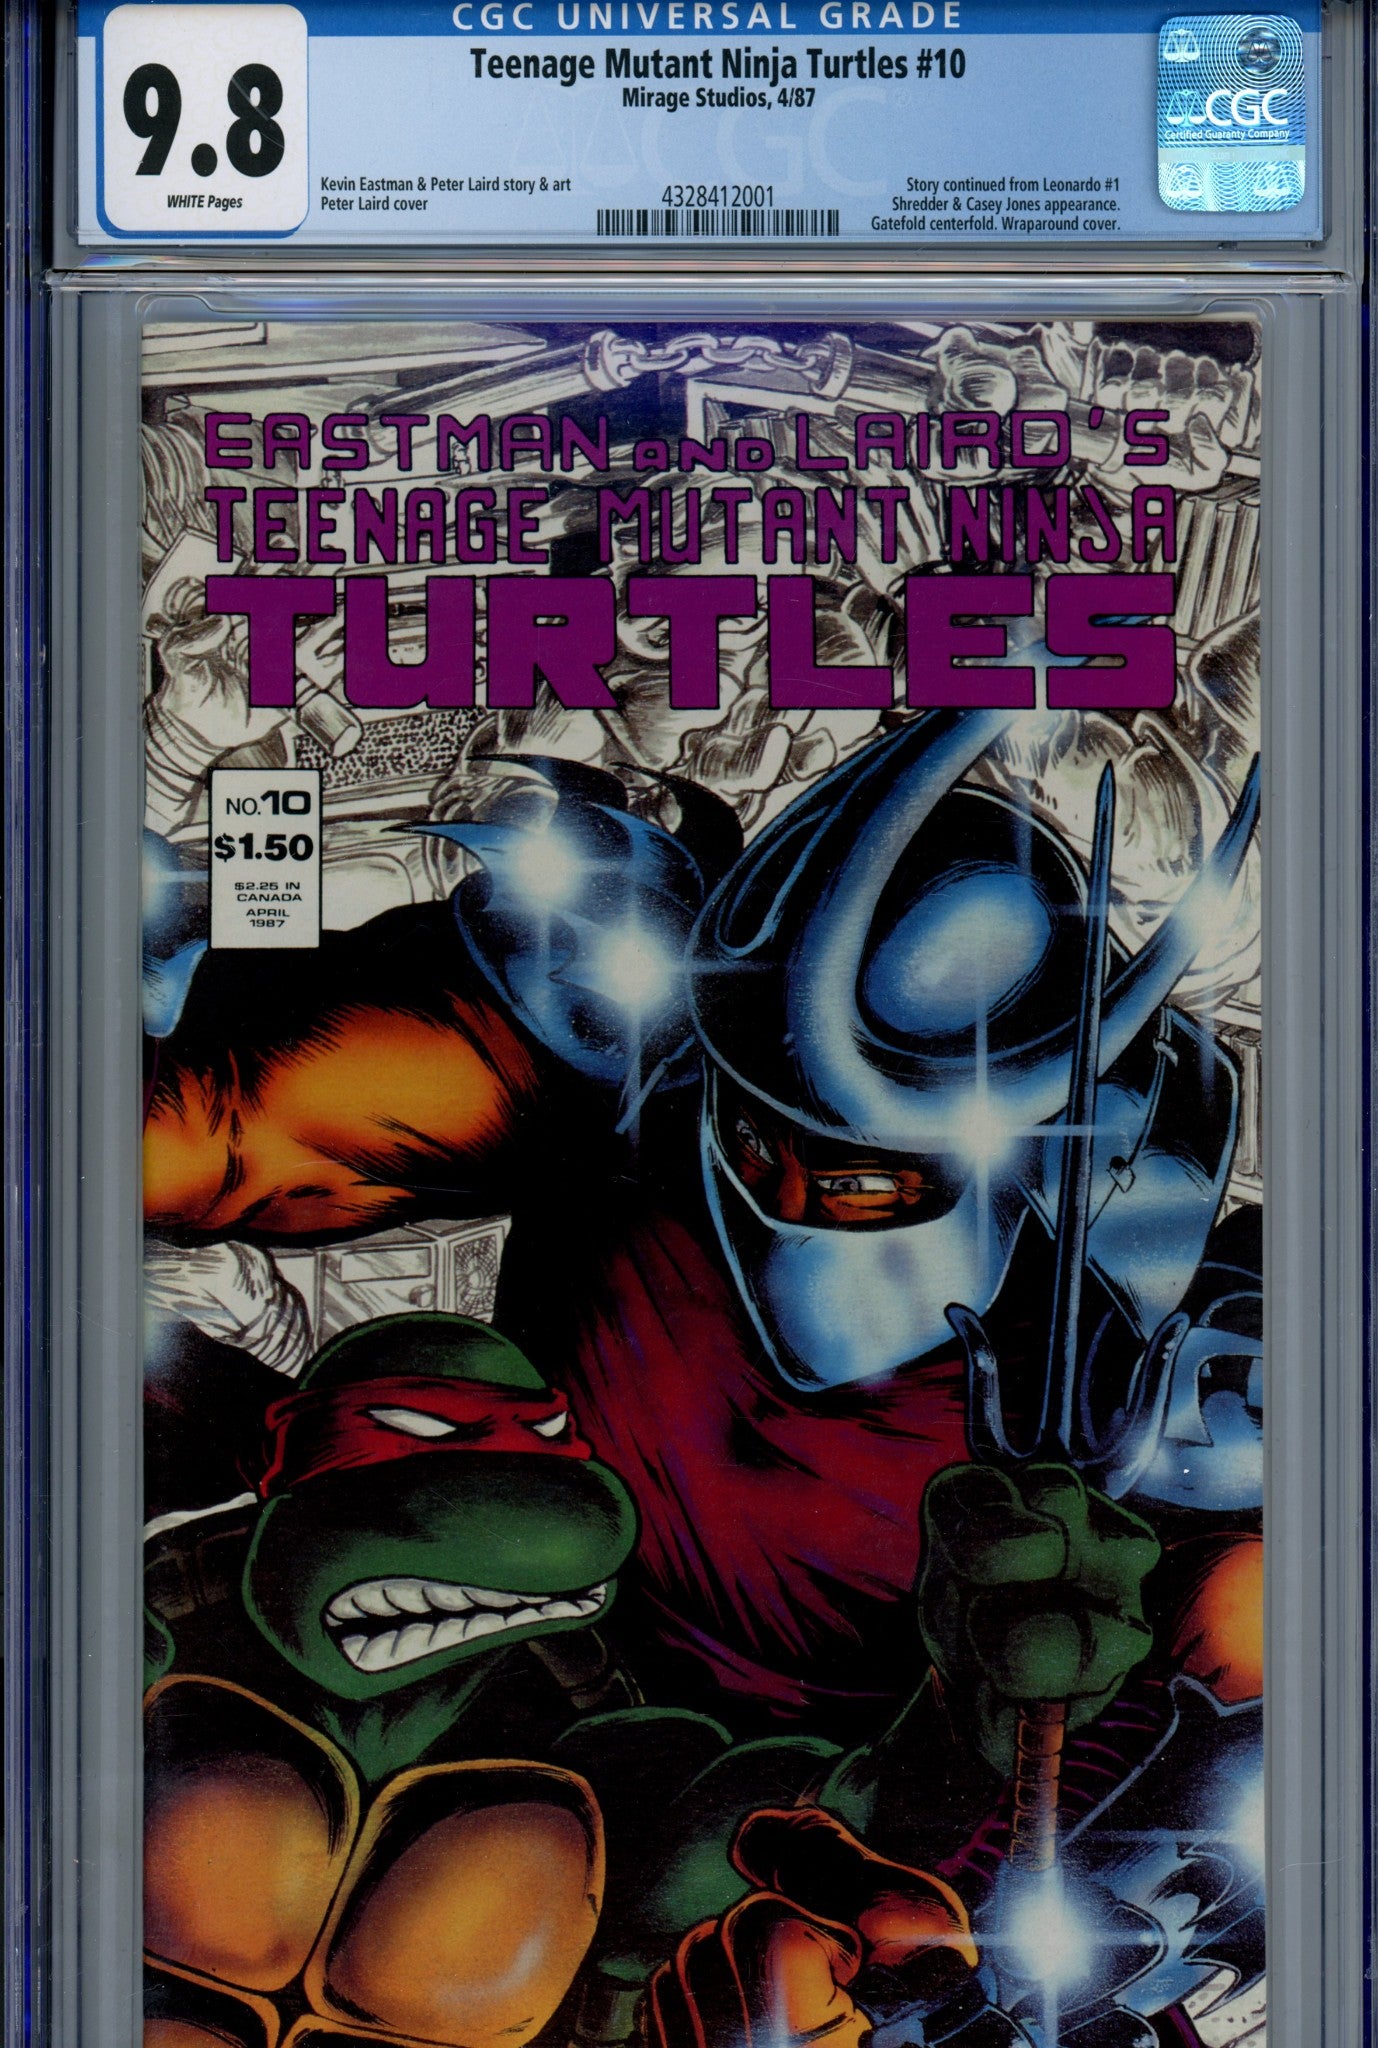 Teenage Mutant Ninja Turtles Vol 1 10 CGC 9.8 (1987)